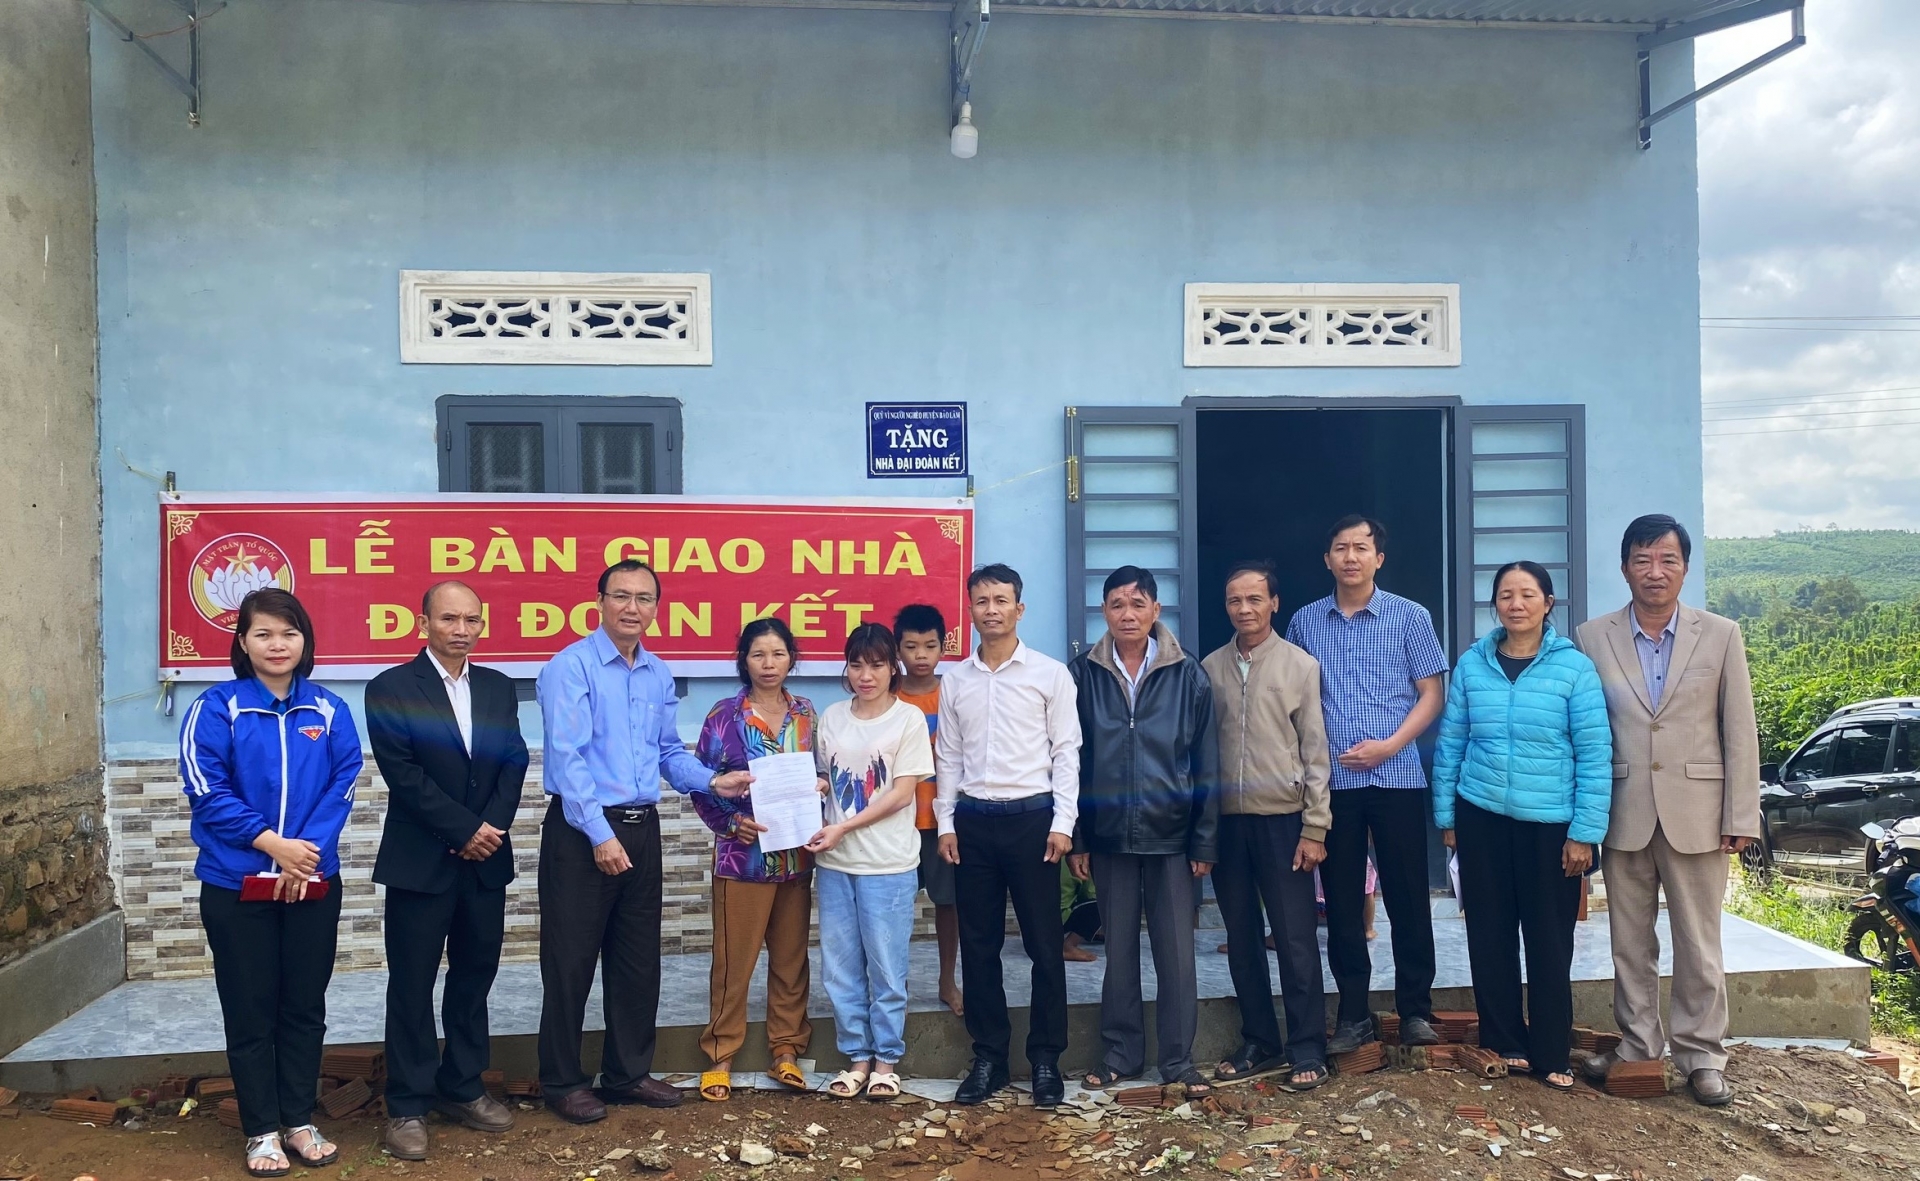 Bảo Lâm: Bàn giao nhà Đại đoàn kết cho hộ nghèo đồng bào dân tộc thiểu số